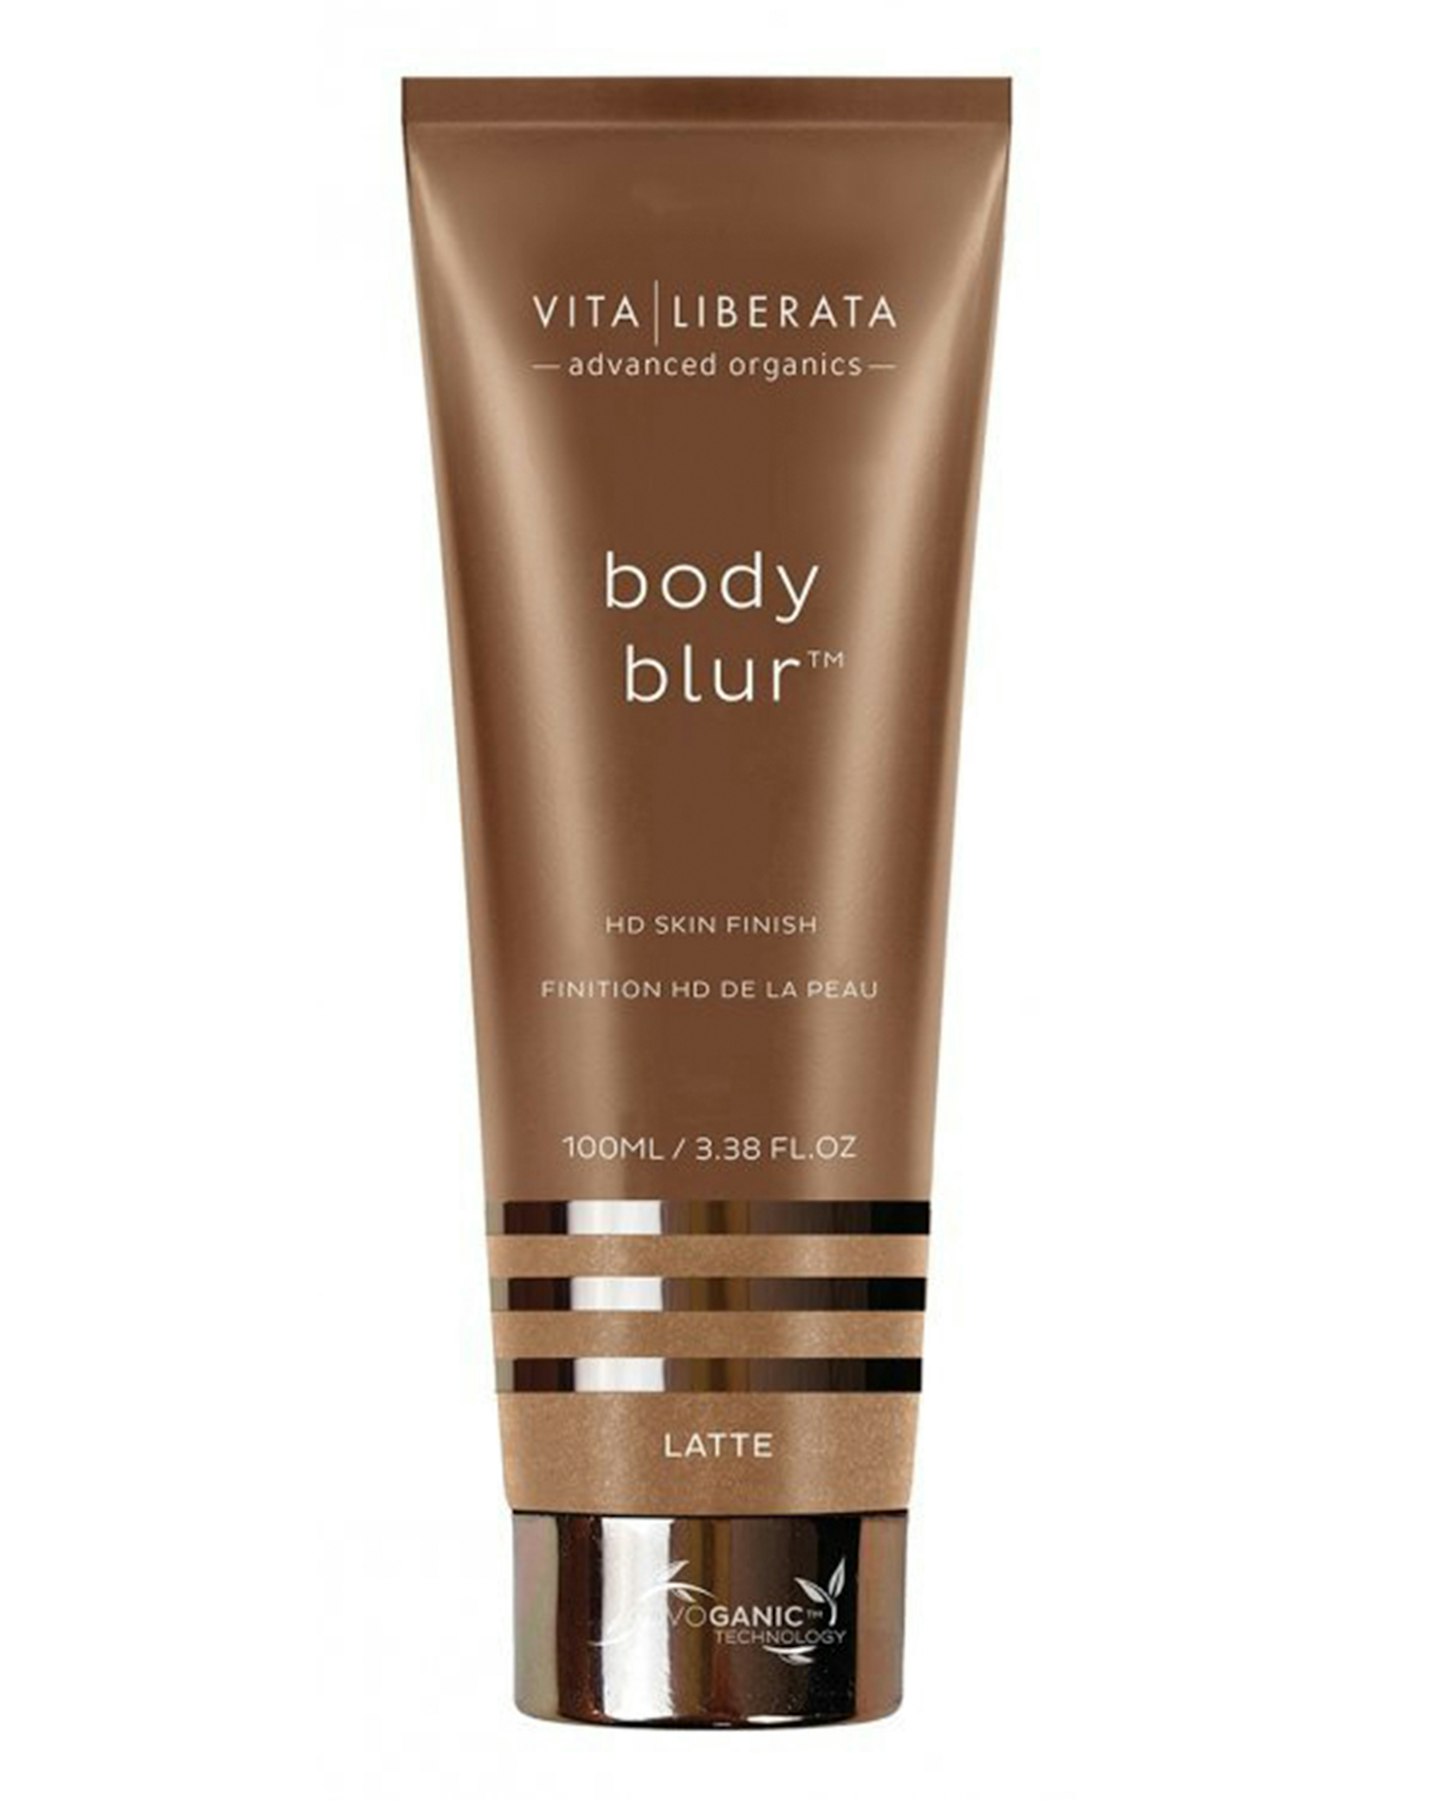 Vita Liberata Body Blur Instant HD Skin Finish, £29.95